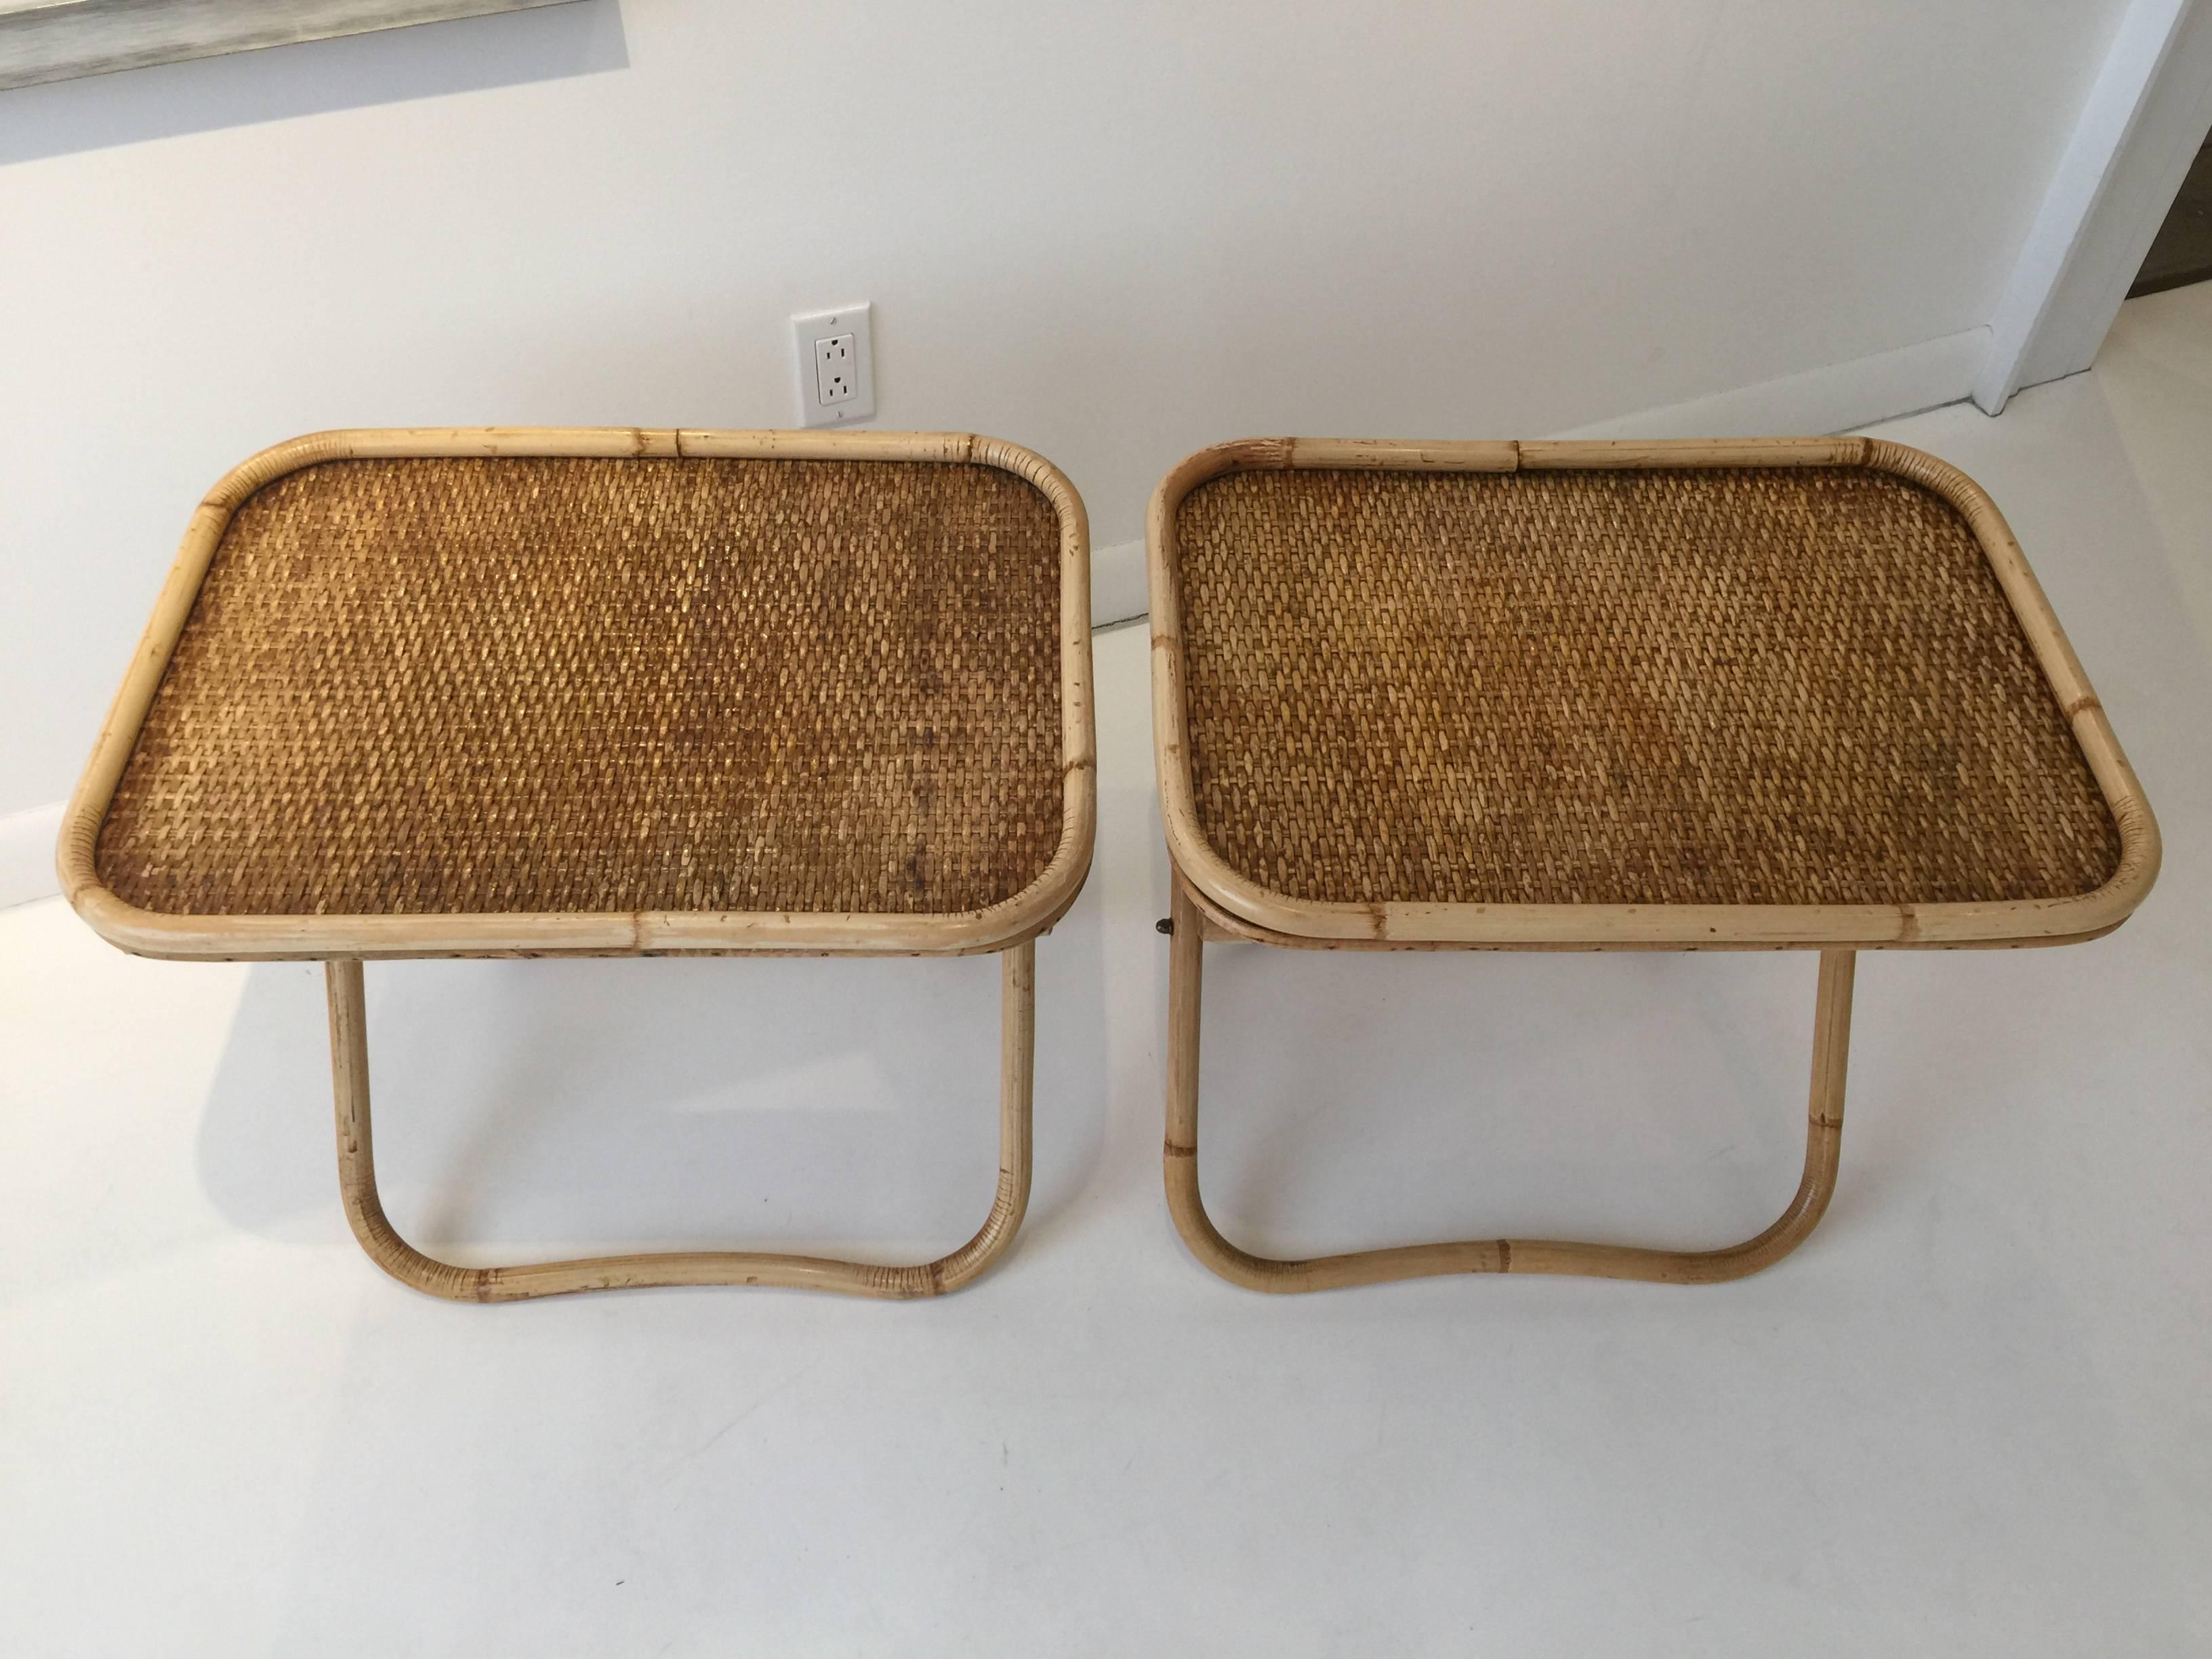 Tables d'appoint pliantes en osier et en rotin, conçues par Gabriella Crespi dans les années 1970 et vendues exclusivement dans ses boutiques. Crespi a arrêté le design après dix ans d'une carrière réussie dans la conception de meubles pour devenir